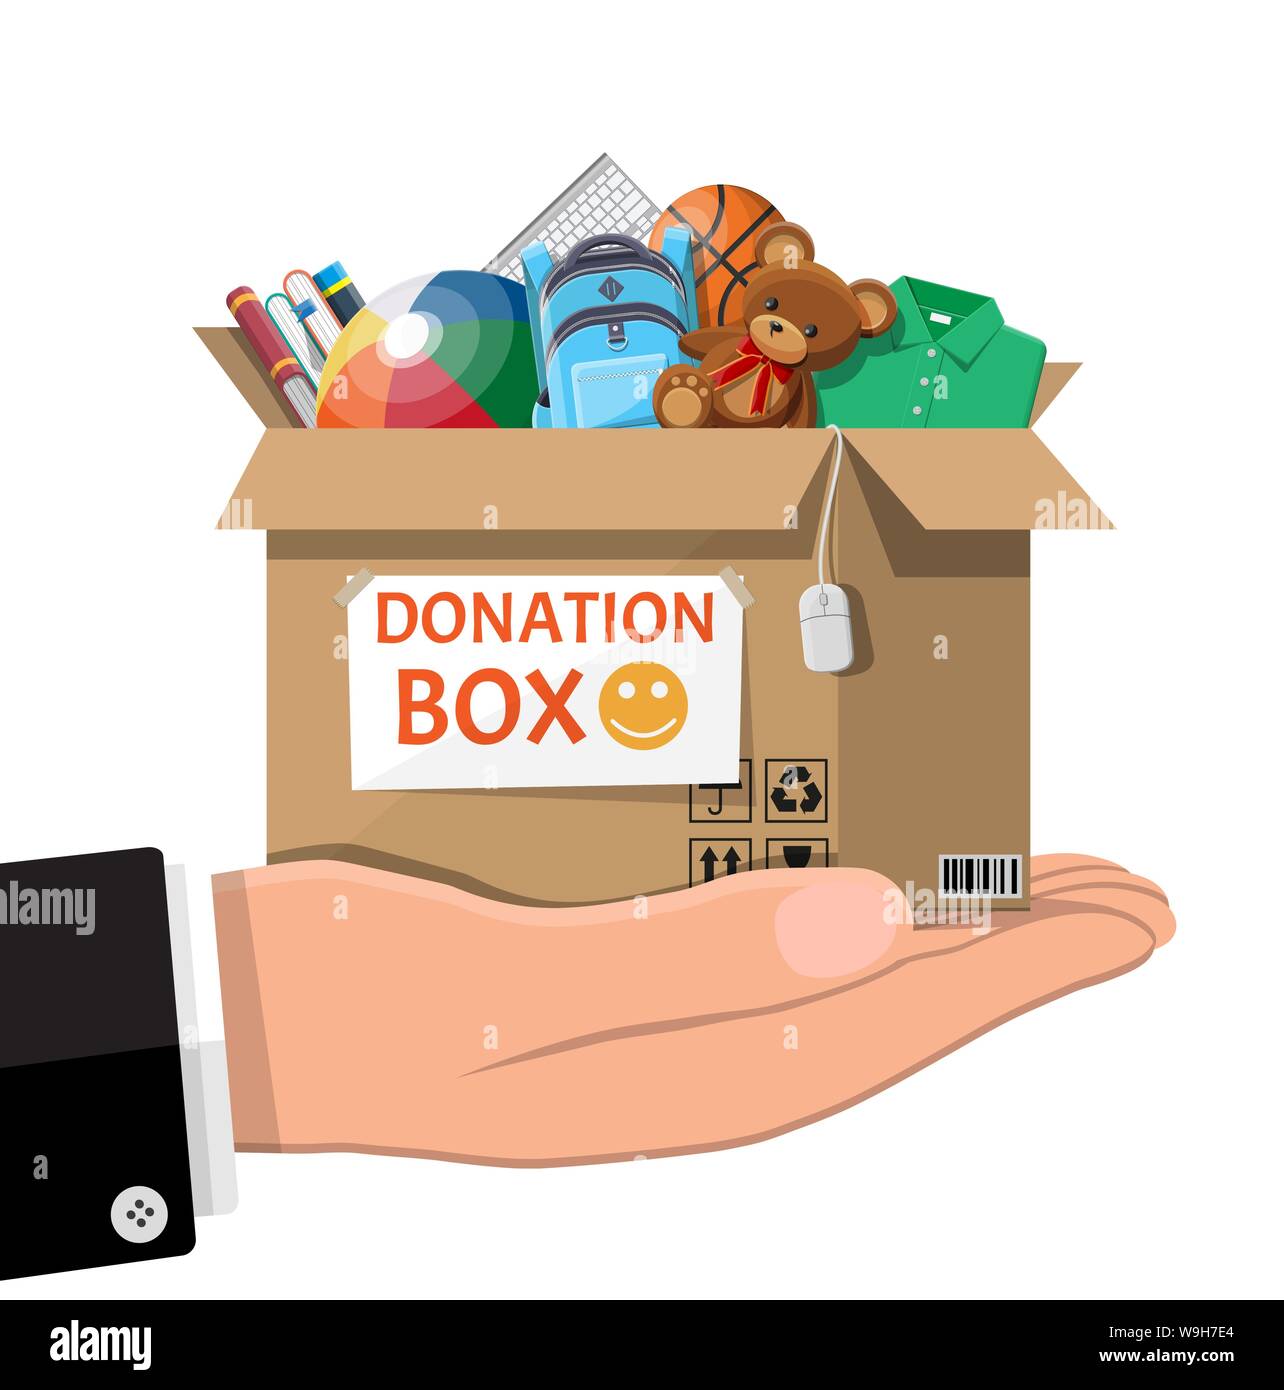 Don en carton boîte pleine de jouets, livres, vêtements et appareils. Aide  pour les enfants, l'aide aux enfants pauvres. Faire un don le récipient  dans la main. La prise en charge sociale,